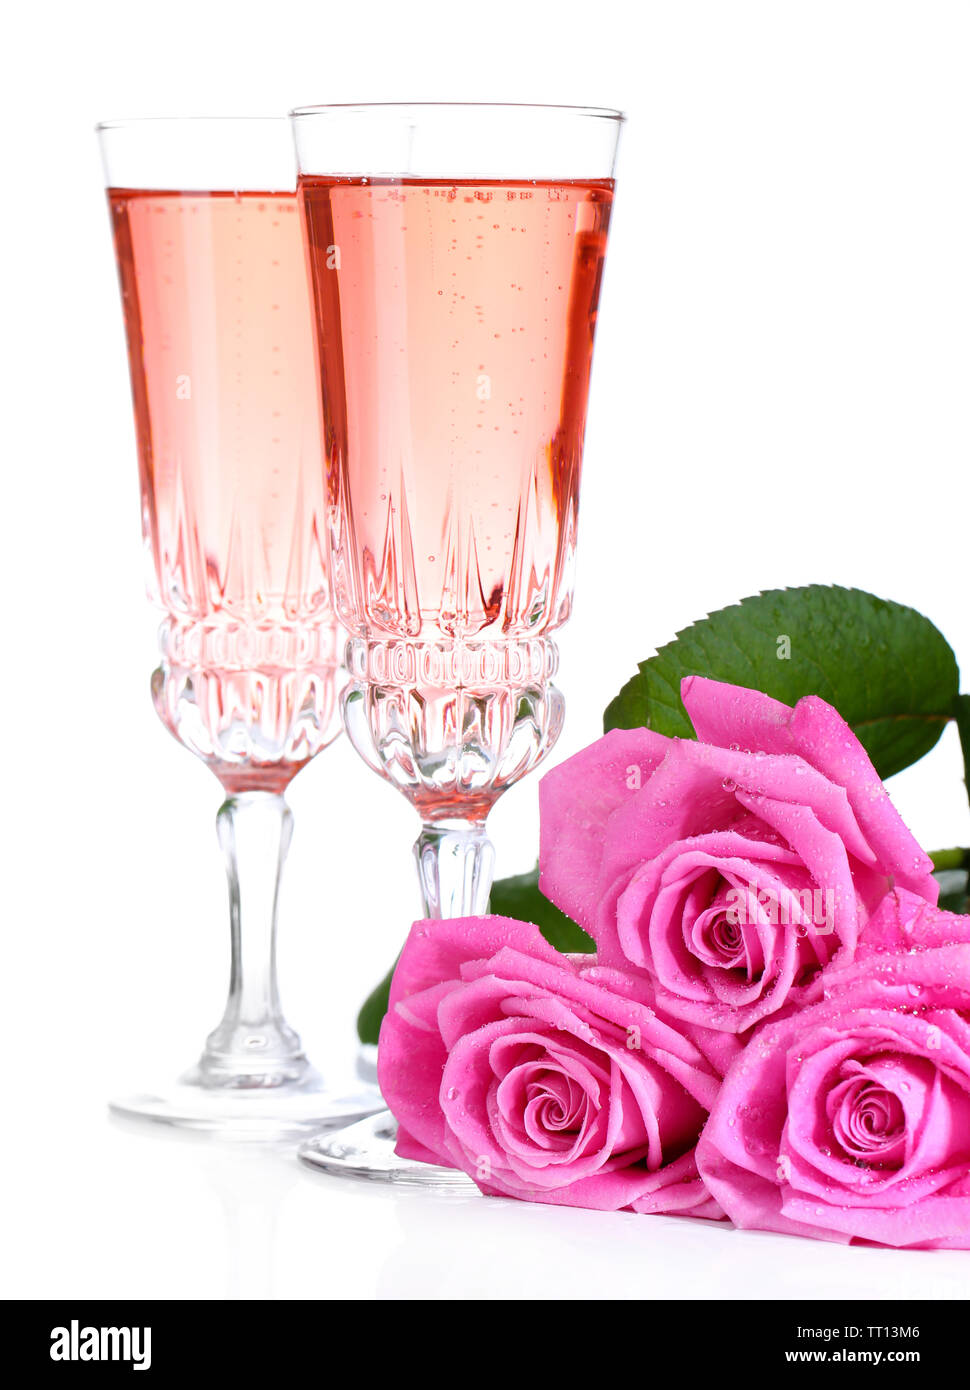 La composition avec pink sparkle dans les verres de vin et de roses roses isolated on white Banque D'Images